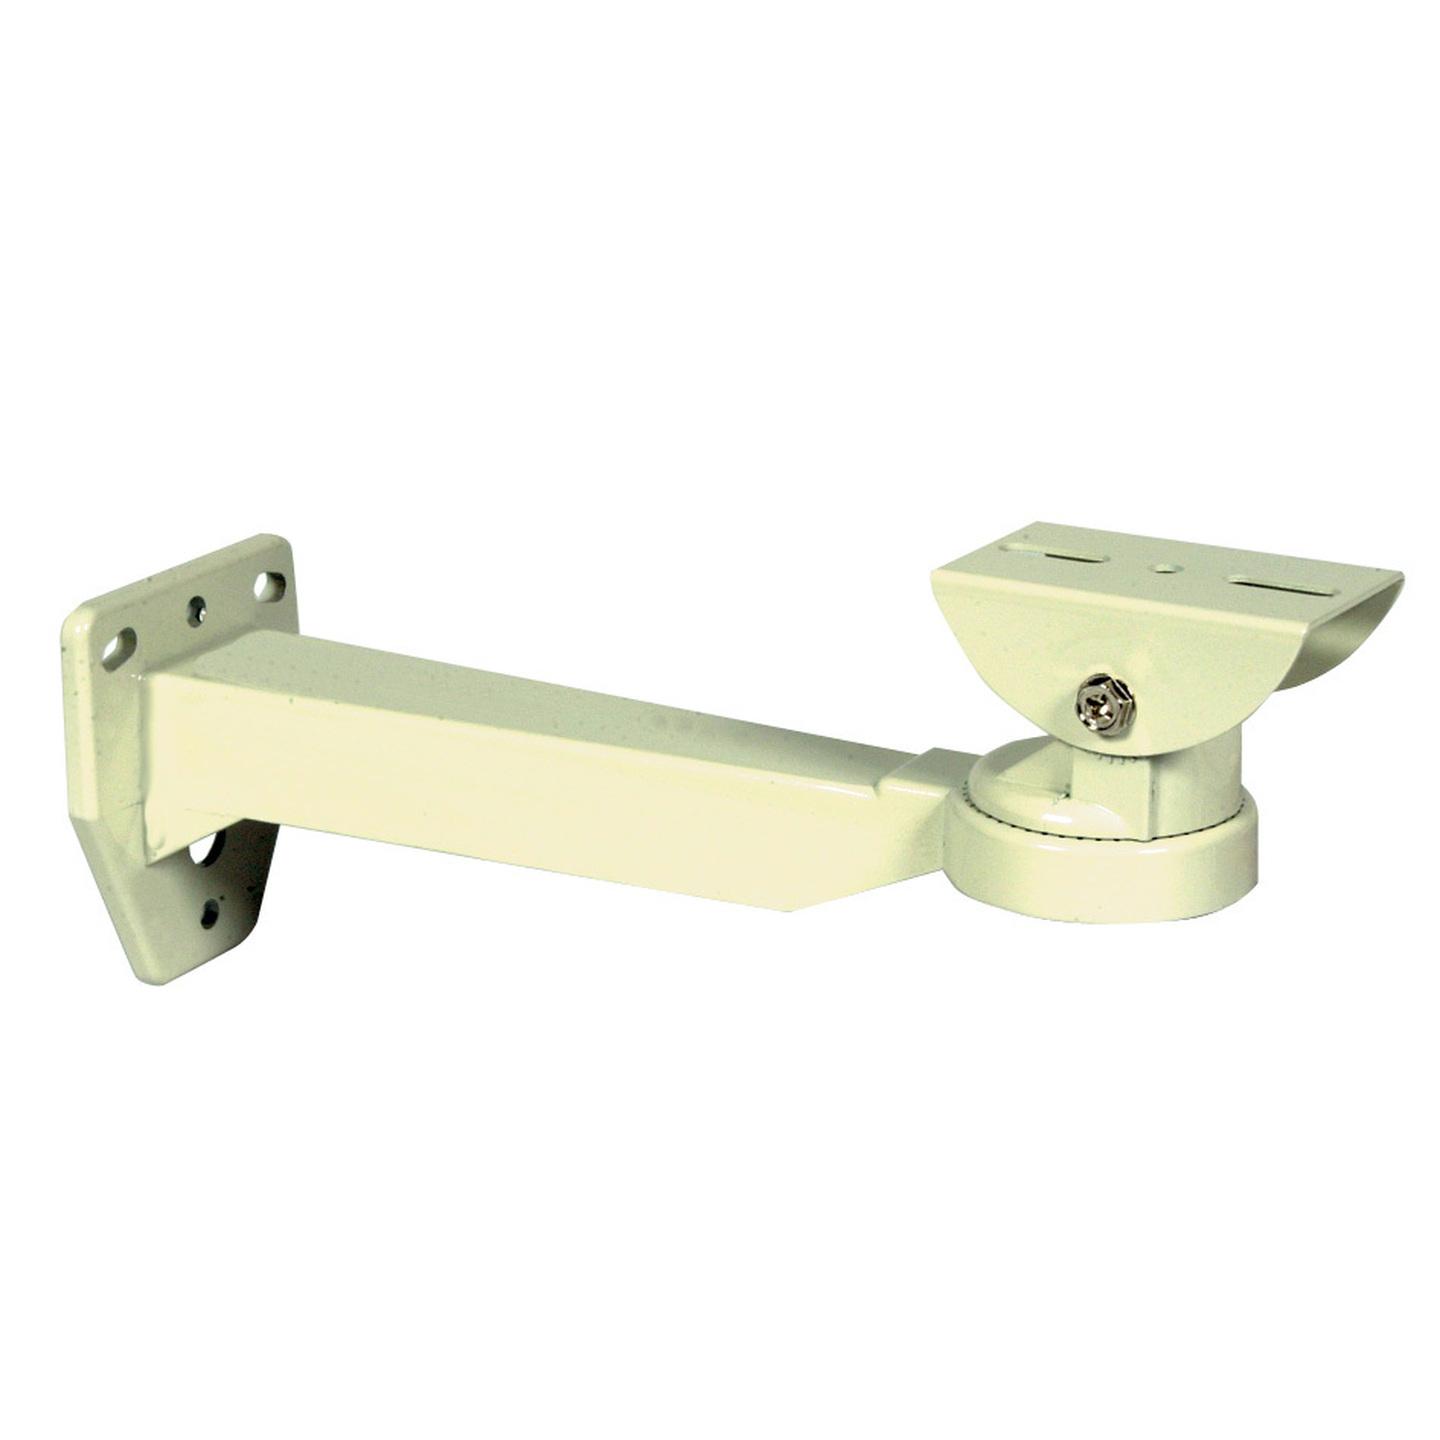 CCTV Camera External Mounting Bracket